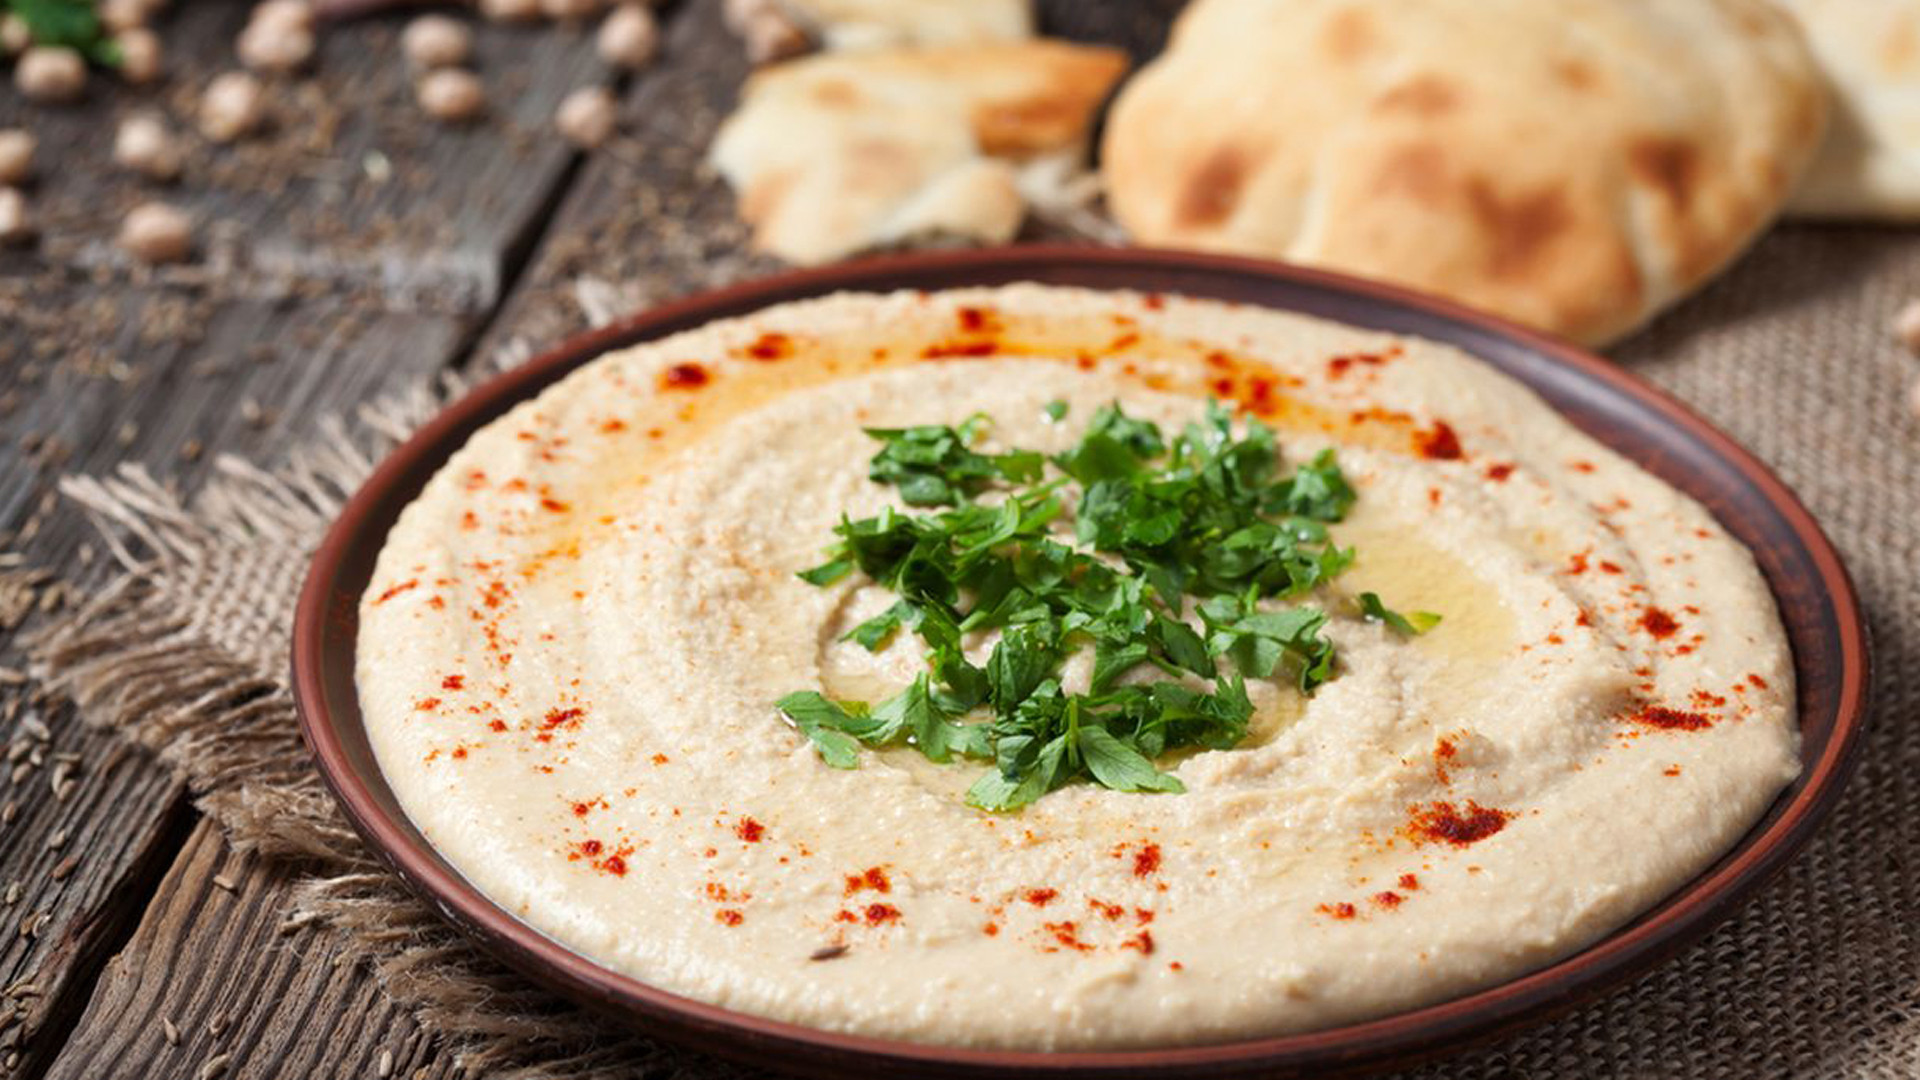 Día Internacional del Hummus, el plato árabe milenario que tiende puentes entre culturas y religiones